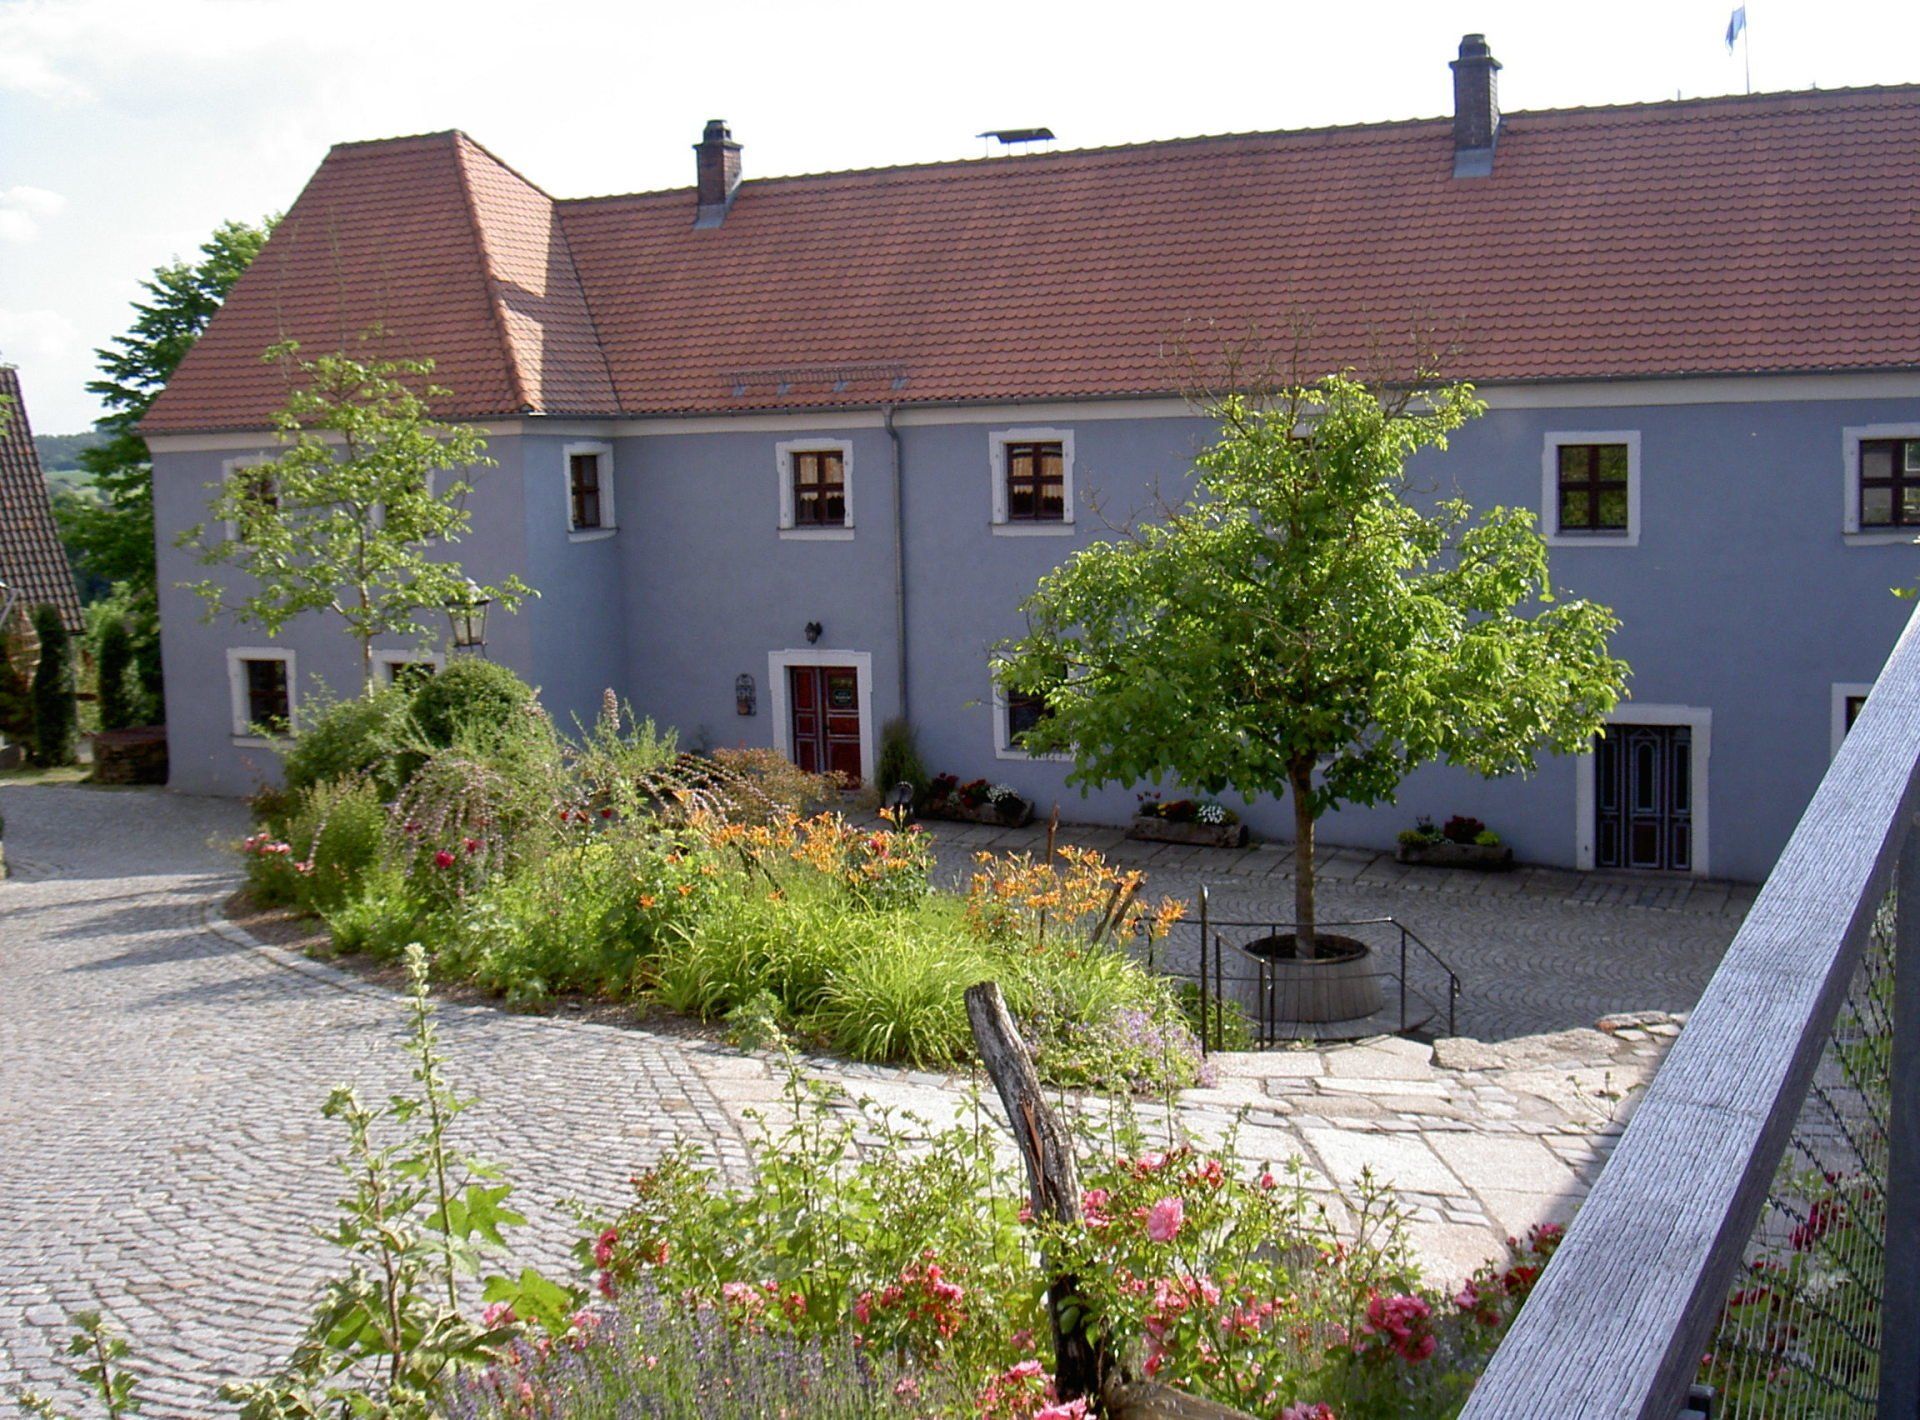 Schafferhof Zoigl in Neuhaus bei Windischeschenbach, Gartenführung